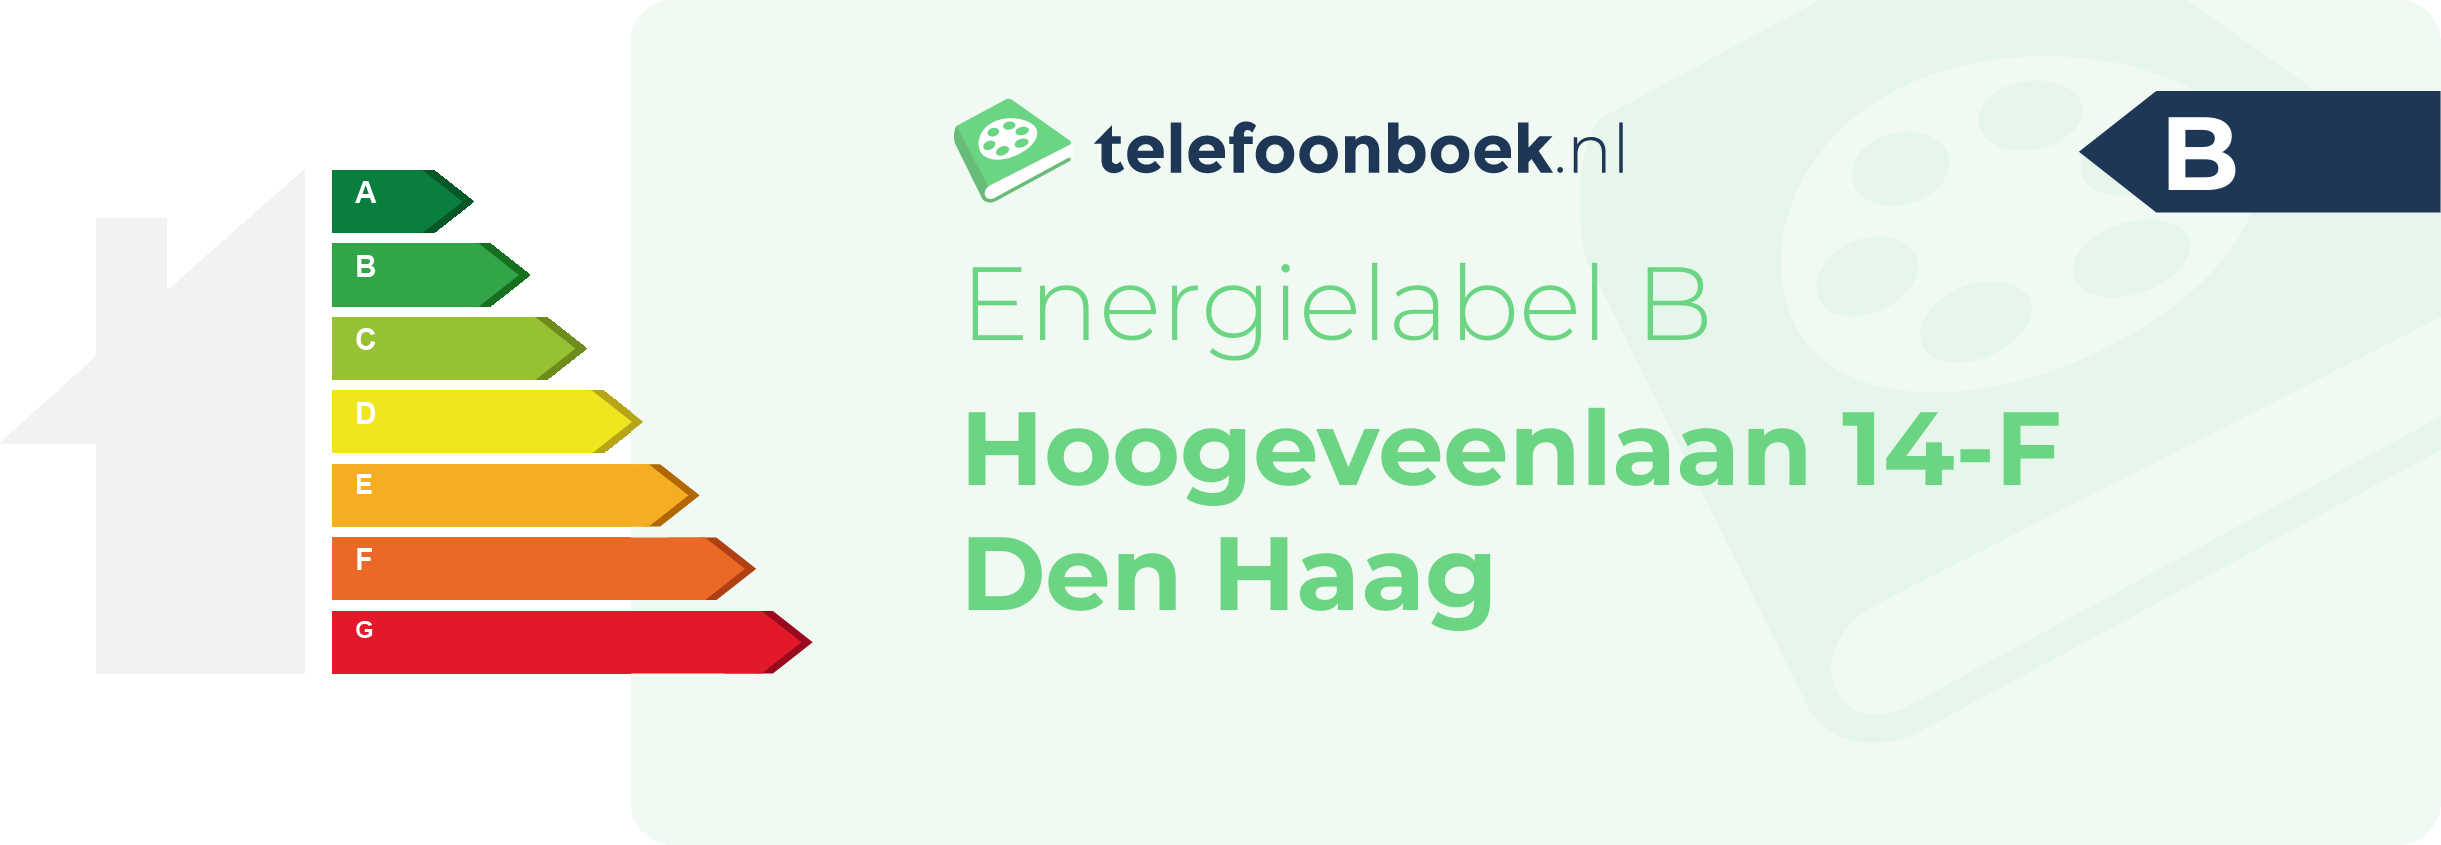 Energielabel Hoogeveenlaan 14-F Den Haag